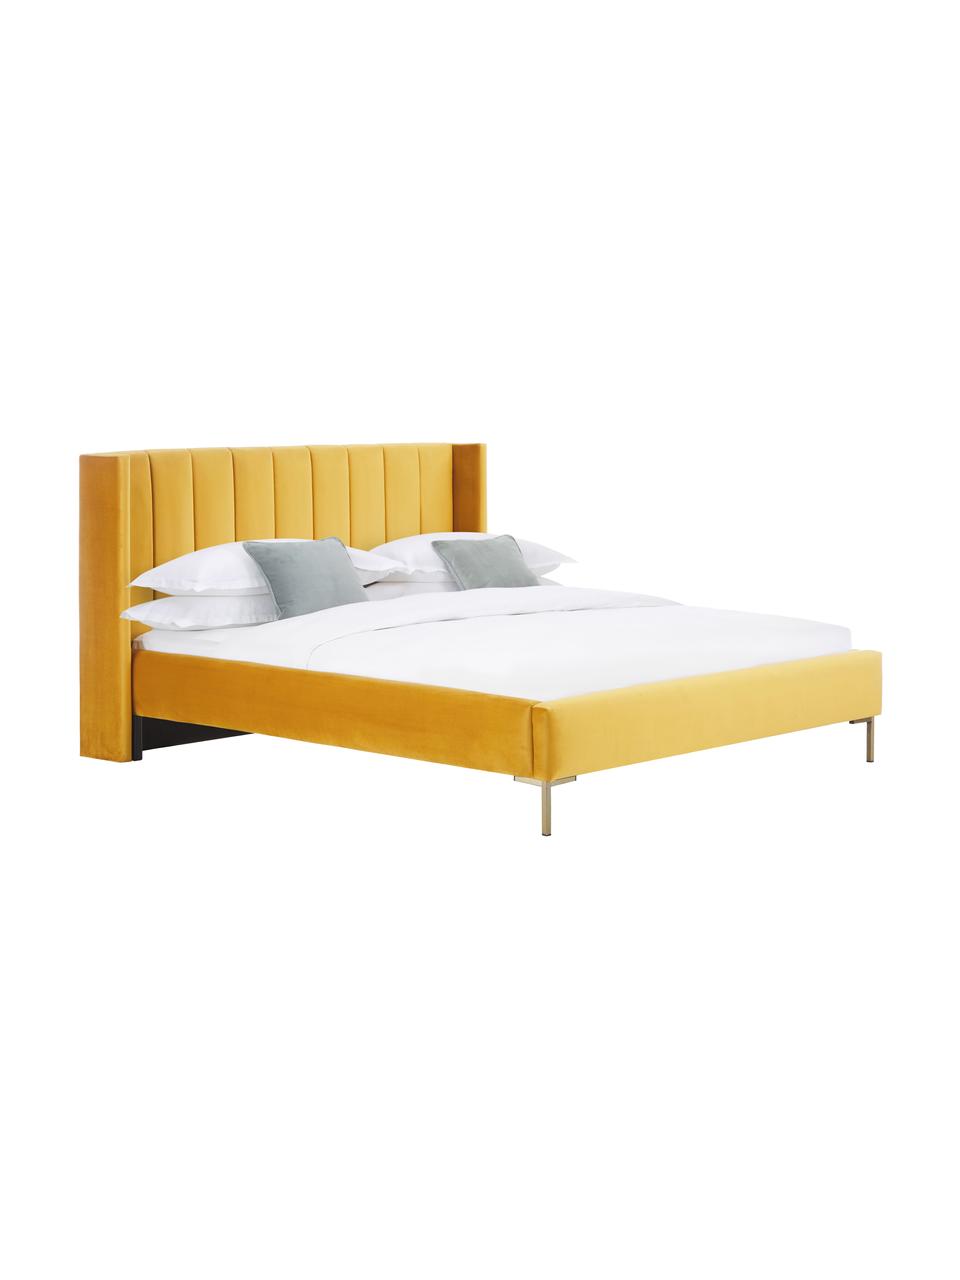 Gestoffeerd fluwelen bed Dusk in geel, Bekleding: polyester fluweel, Frame: massief grenenhout, FSC-g, Poten: gepoedercoat metaal, Fluweel geel, 140 x 200 cm